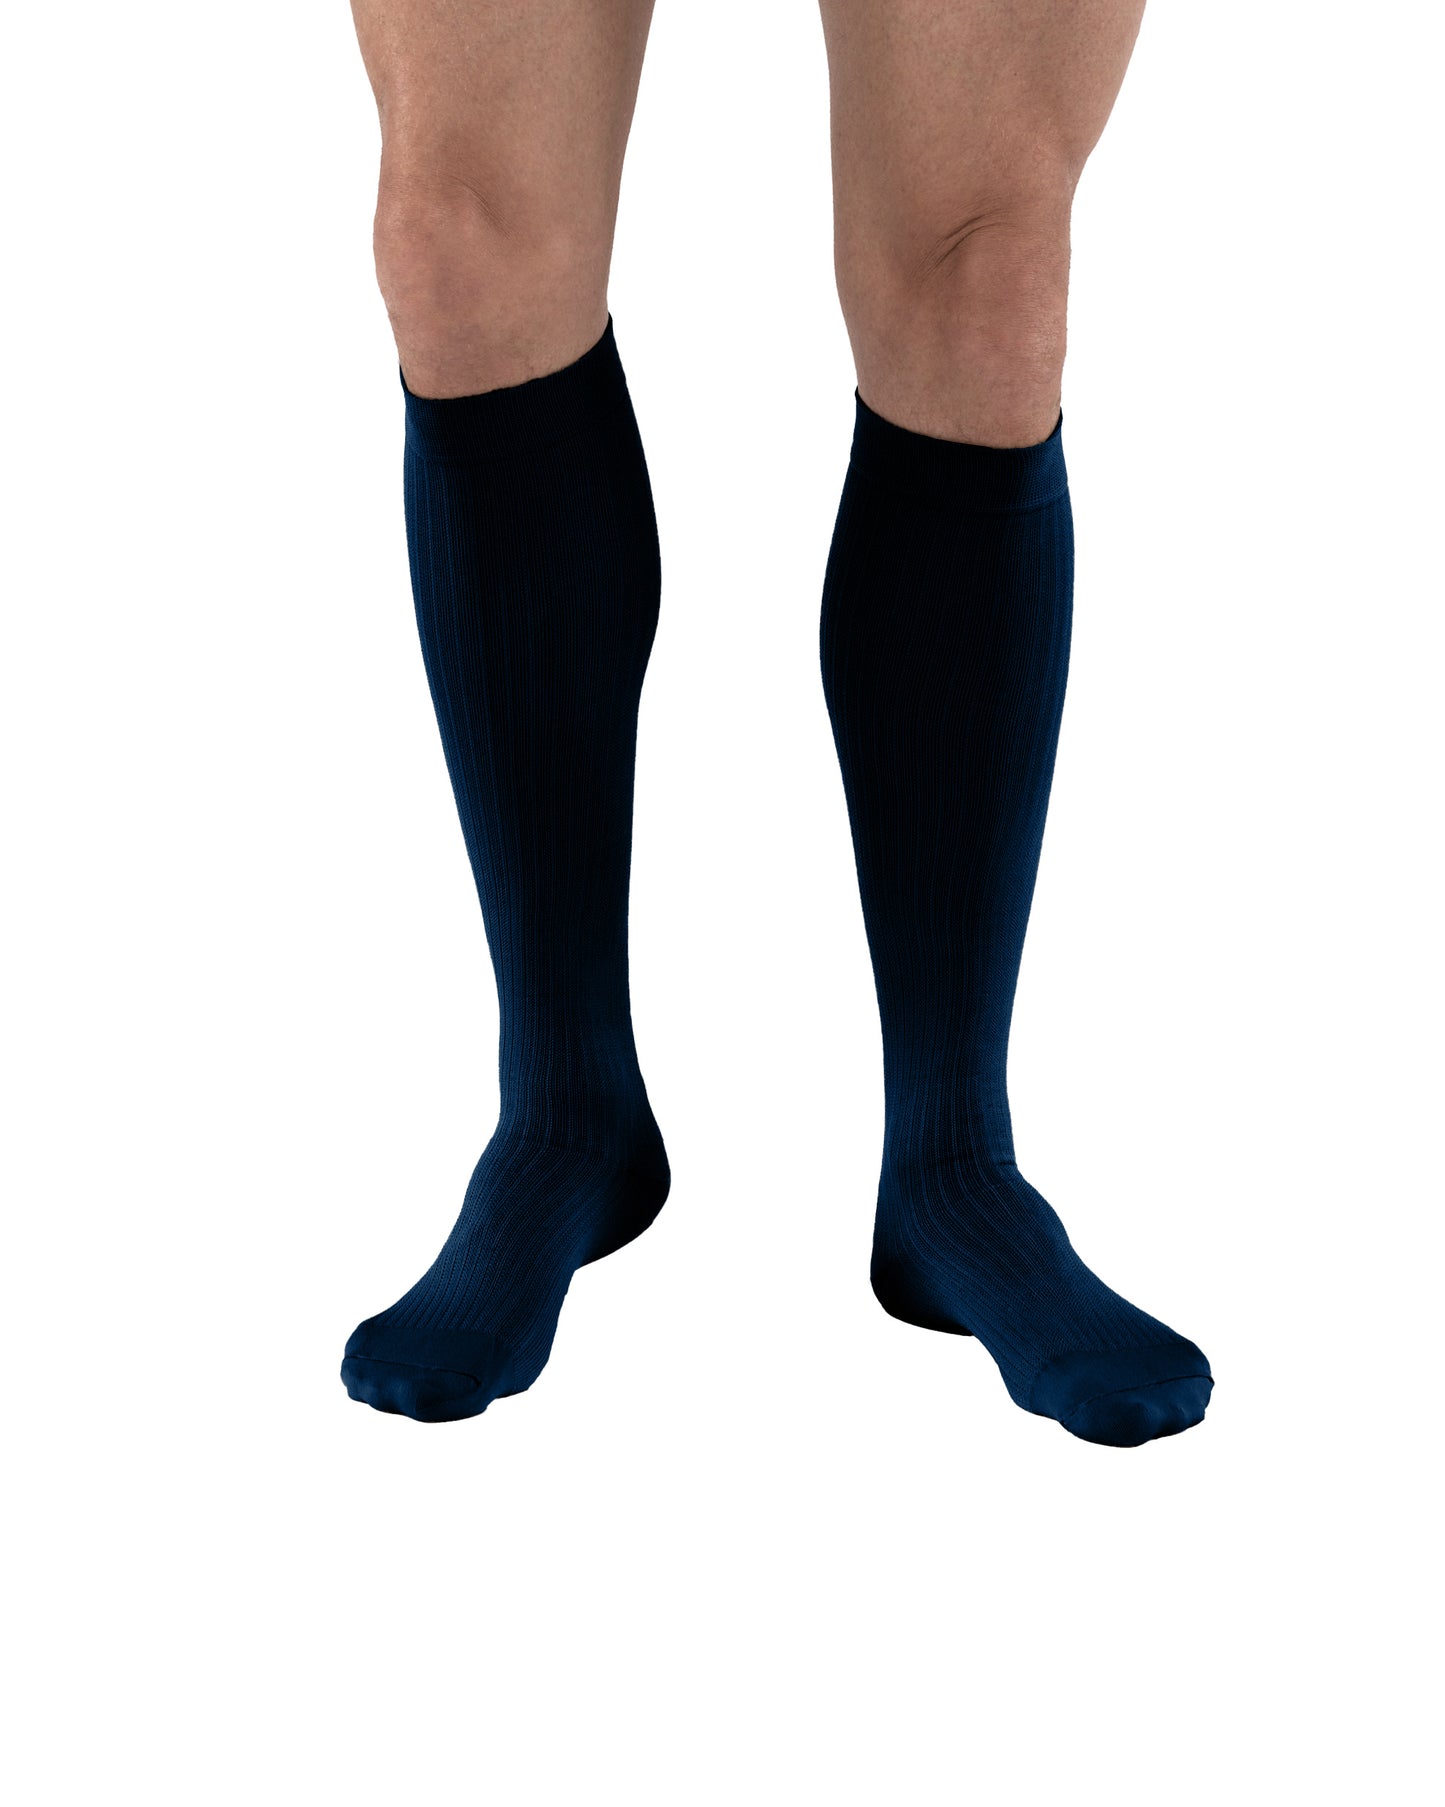 JOBST Men's Dress Compression Socks 8-15 mmHg Knee High Closed Toe